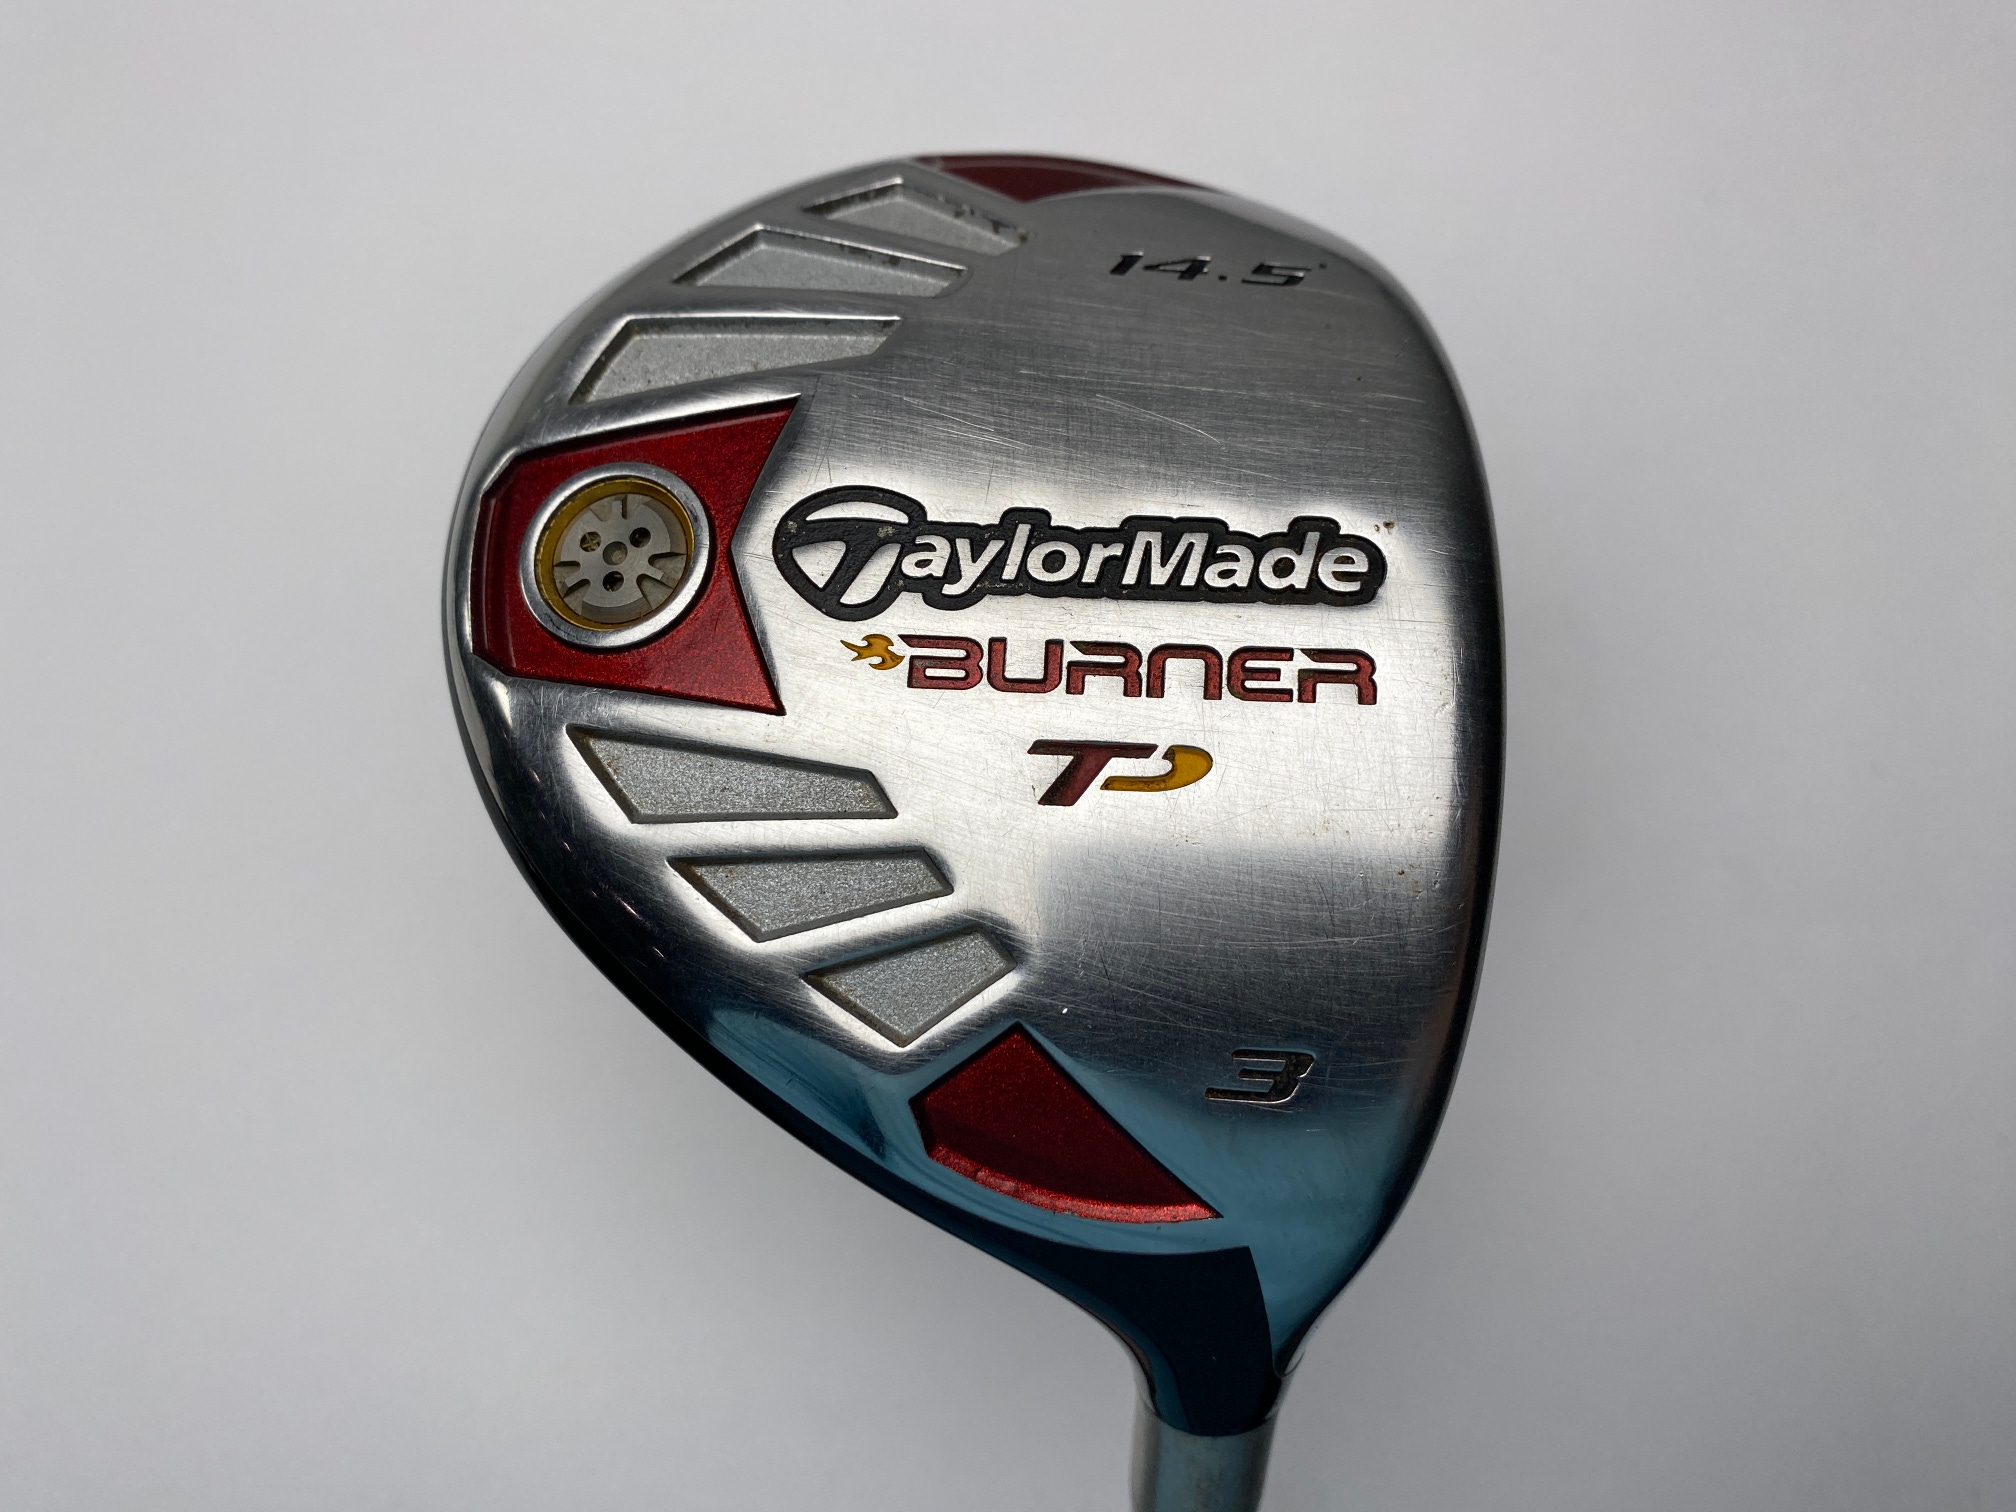 Taylormade Burner TP 3 Fairway Wood 14.5* REAX SuperFast 75g Stiff Graphite RH